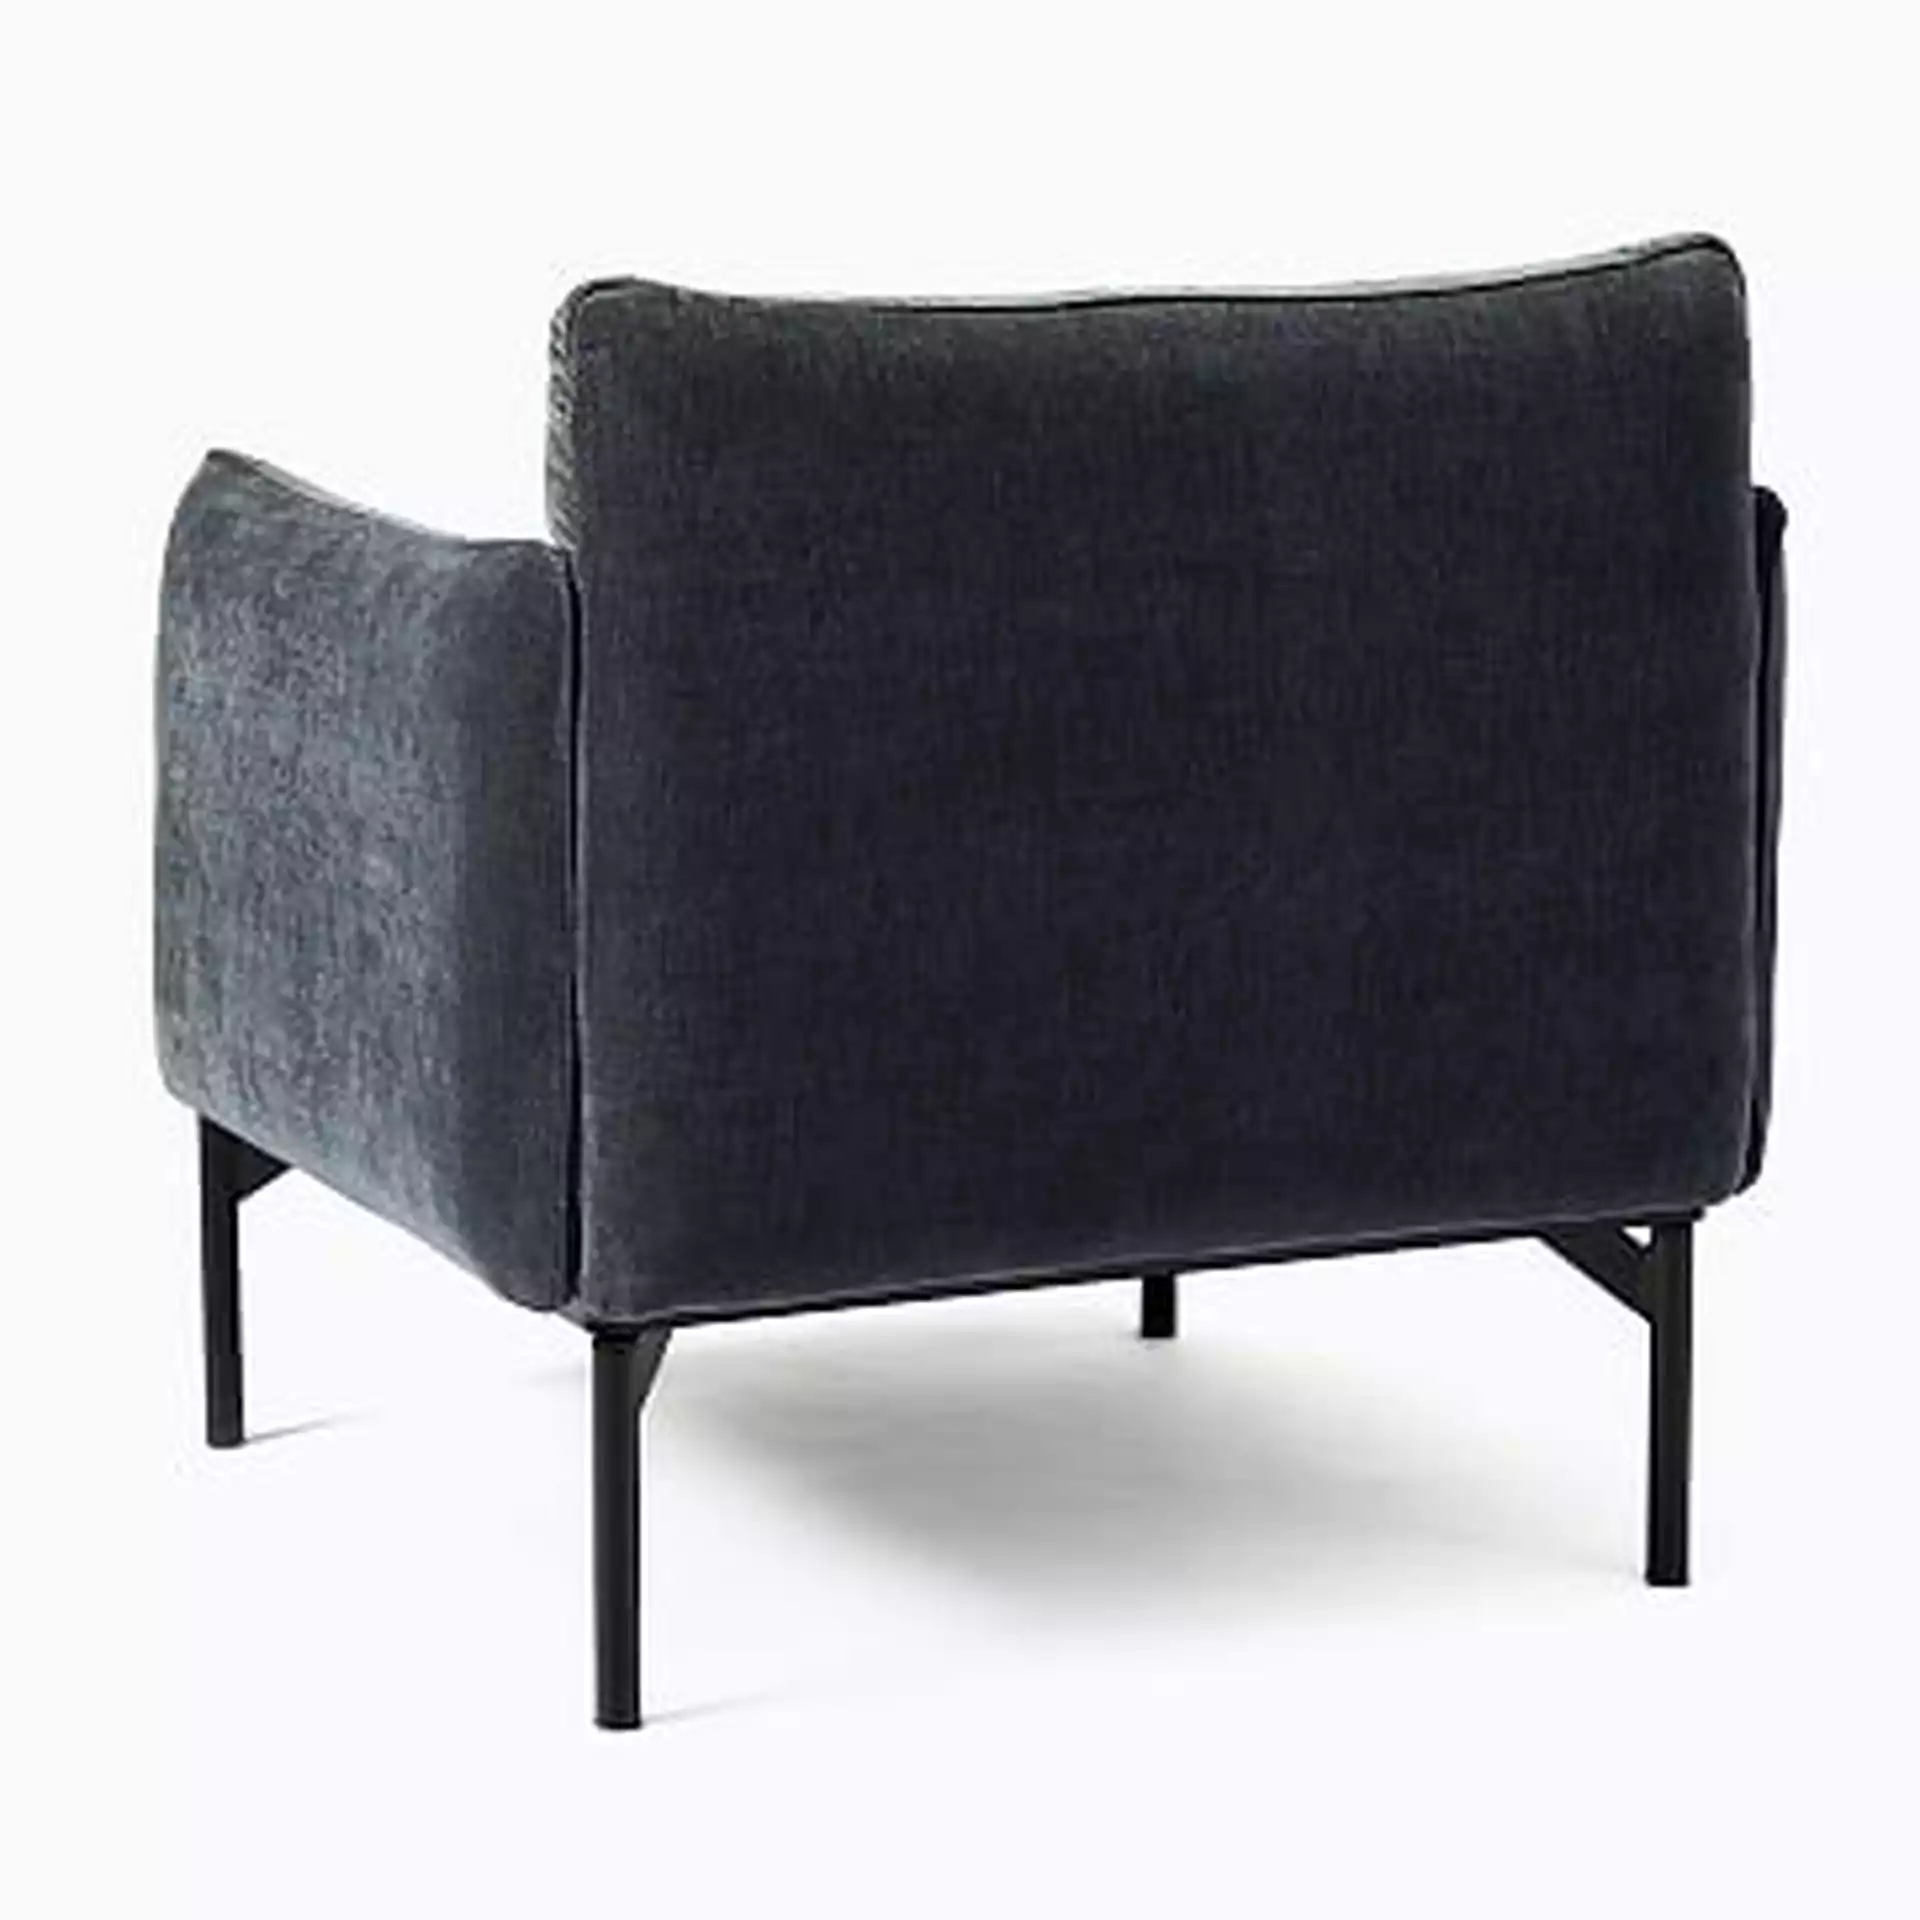 Penn Chair, Modern Chenille, Slate Black